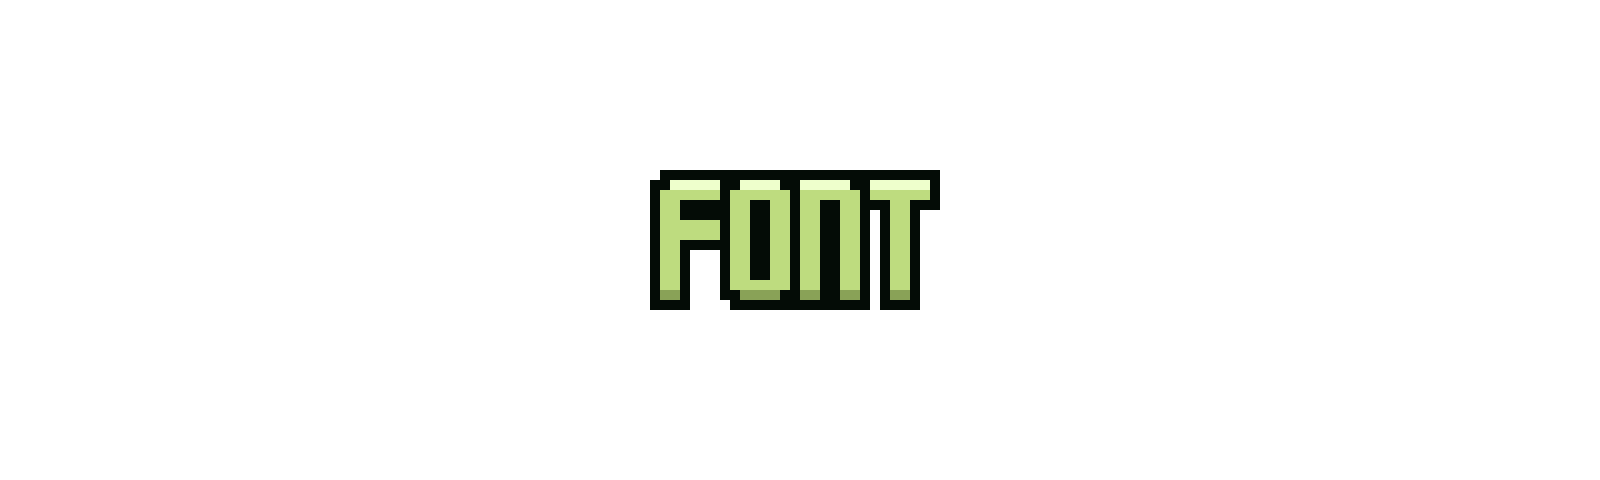 PixelStorm Font Pack